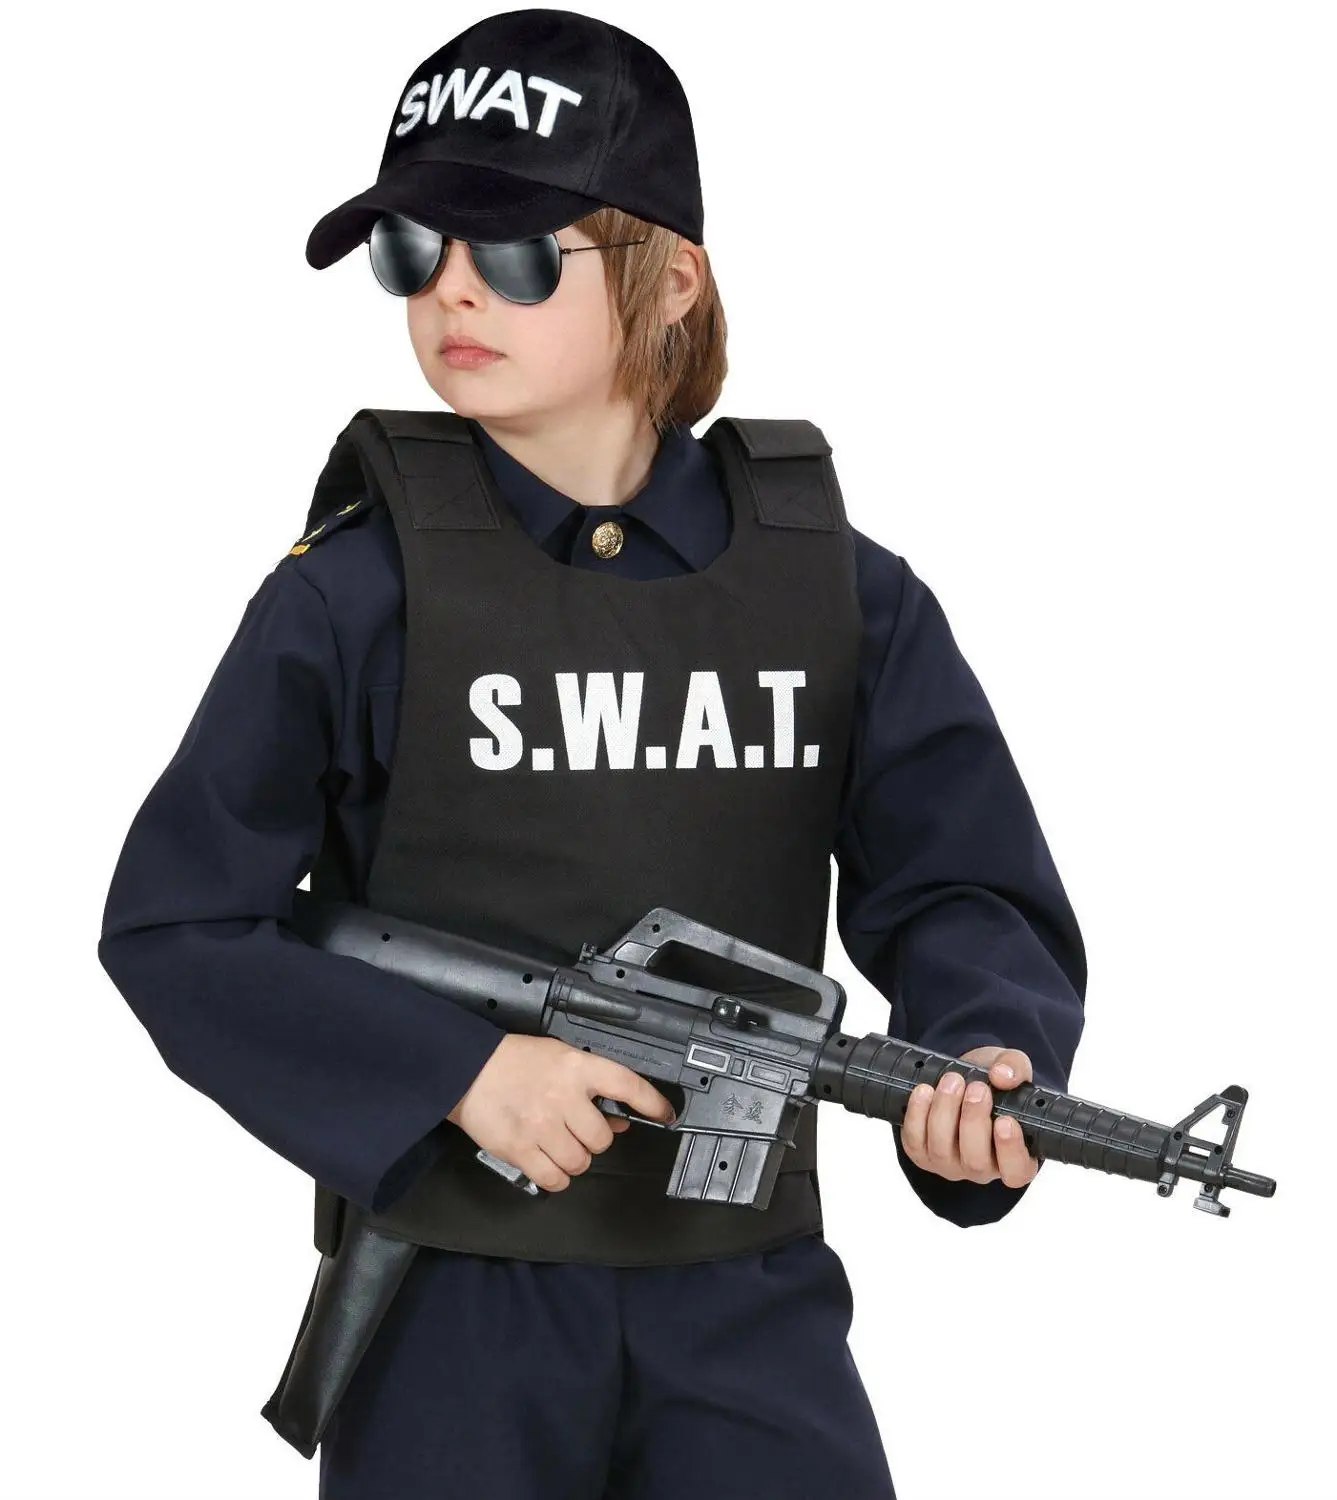 

Детский полицейский костюм спецназа, пуленепробиваемый жилет и искусственный головной убор, наряд для детей 3-9 лет, костюм полицейского